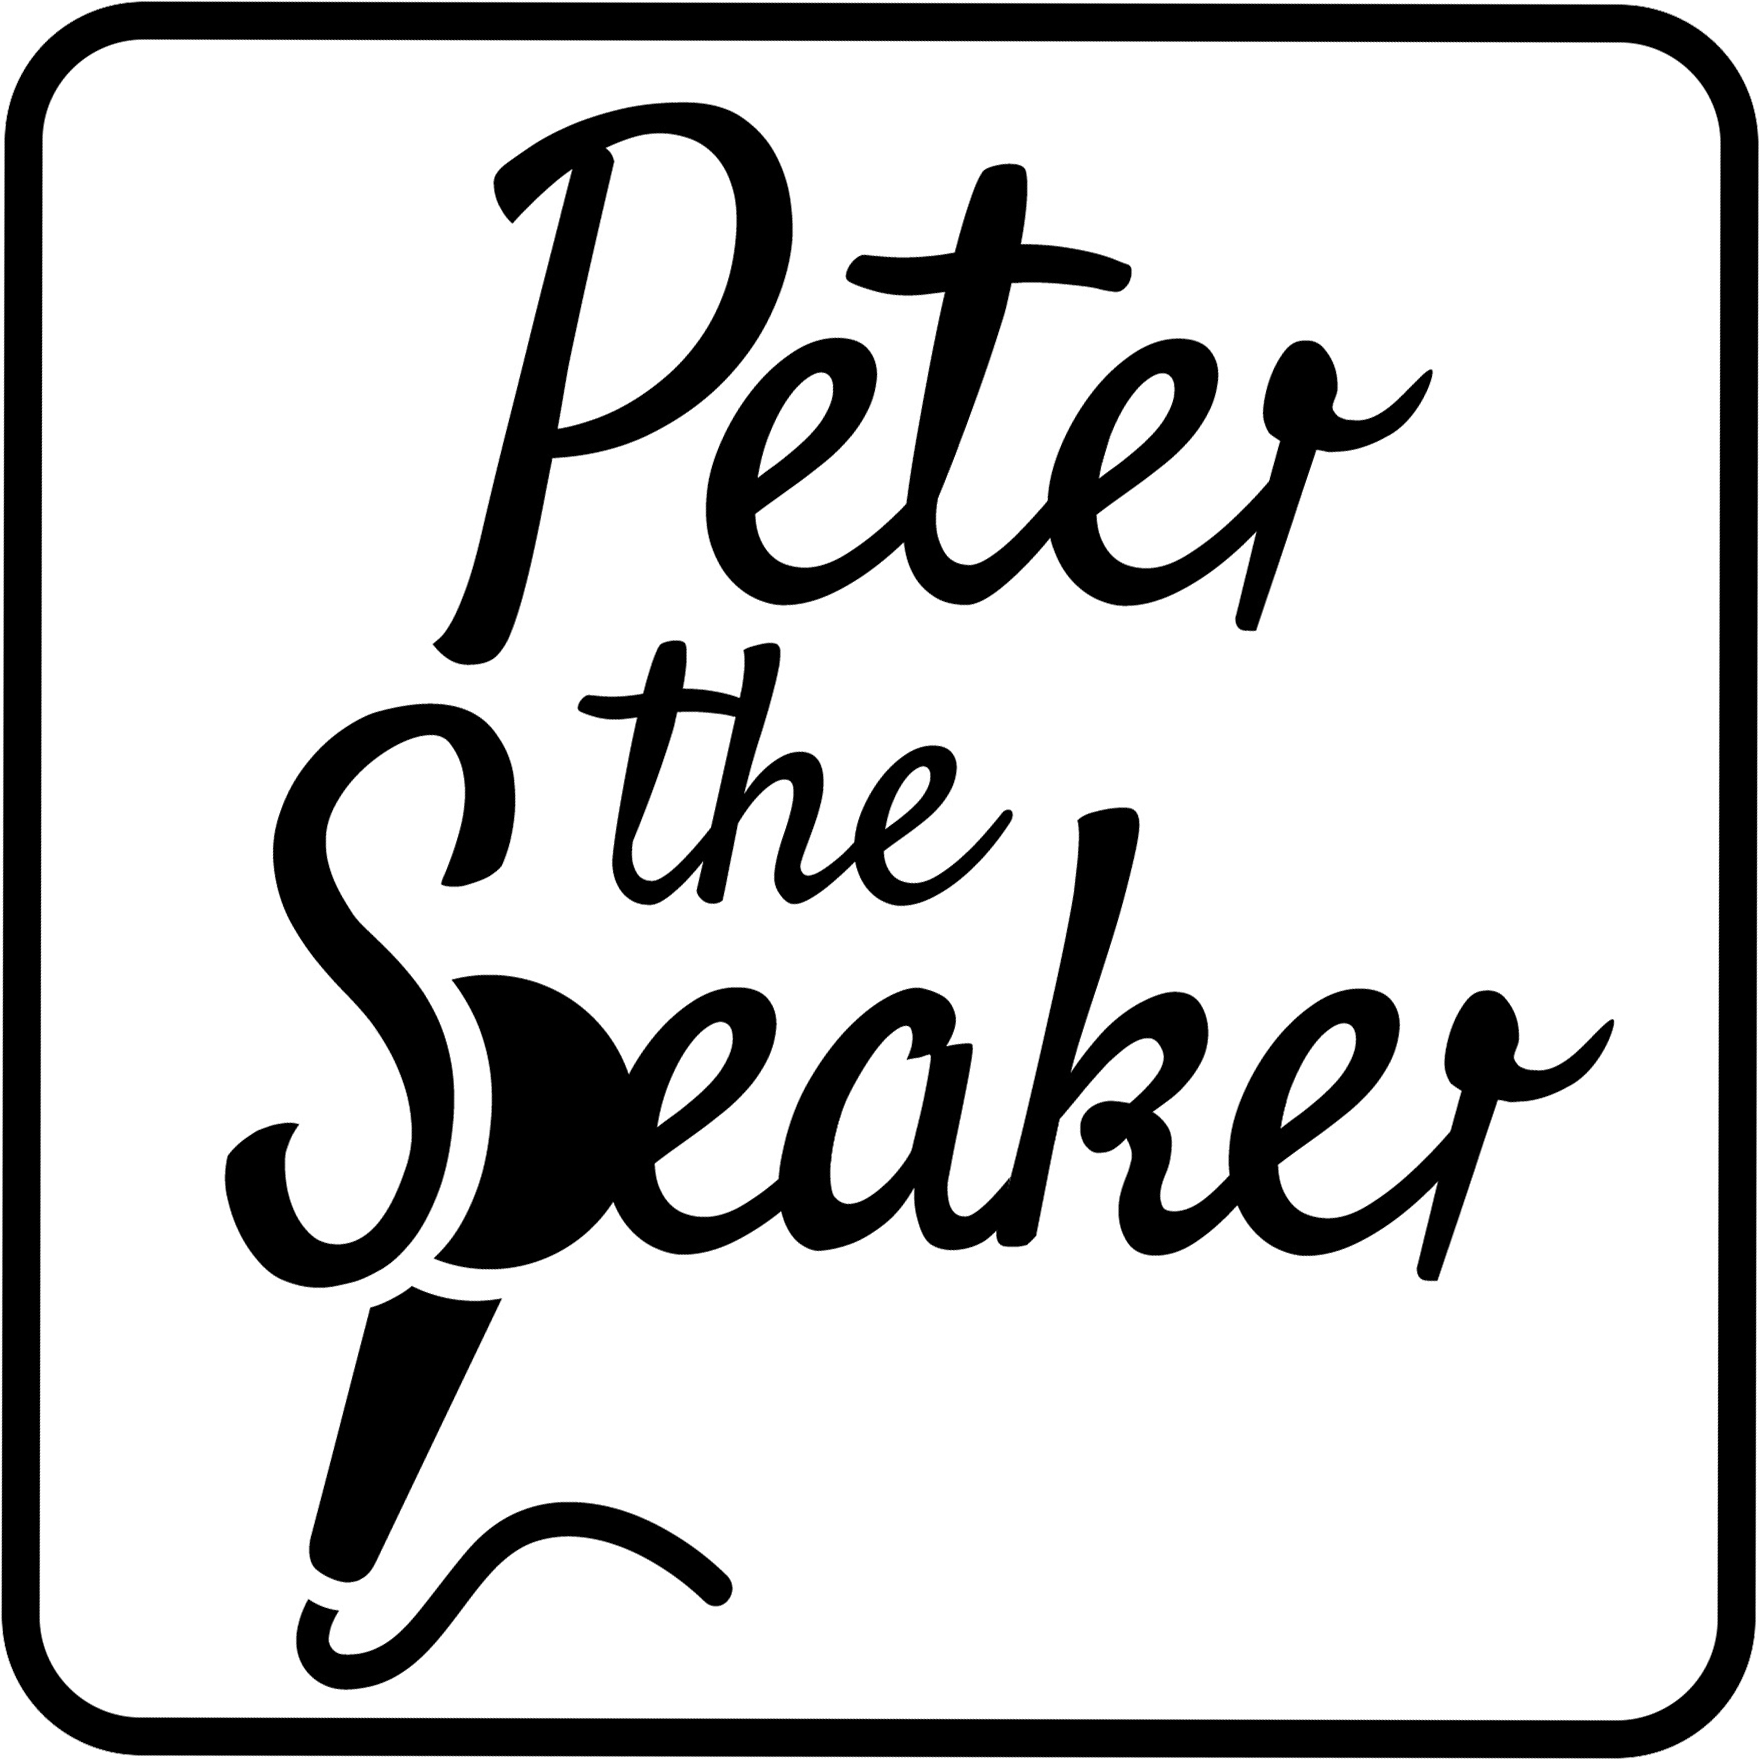 Peter the Speaker